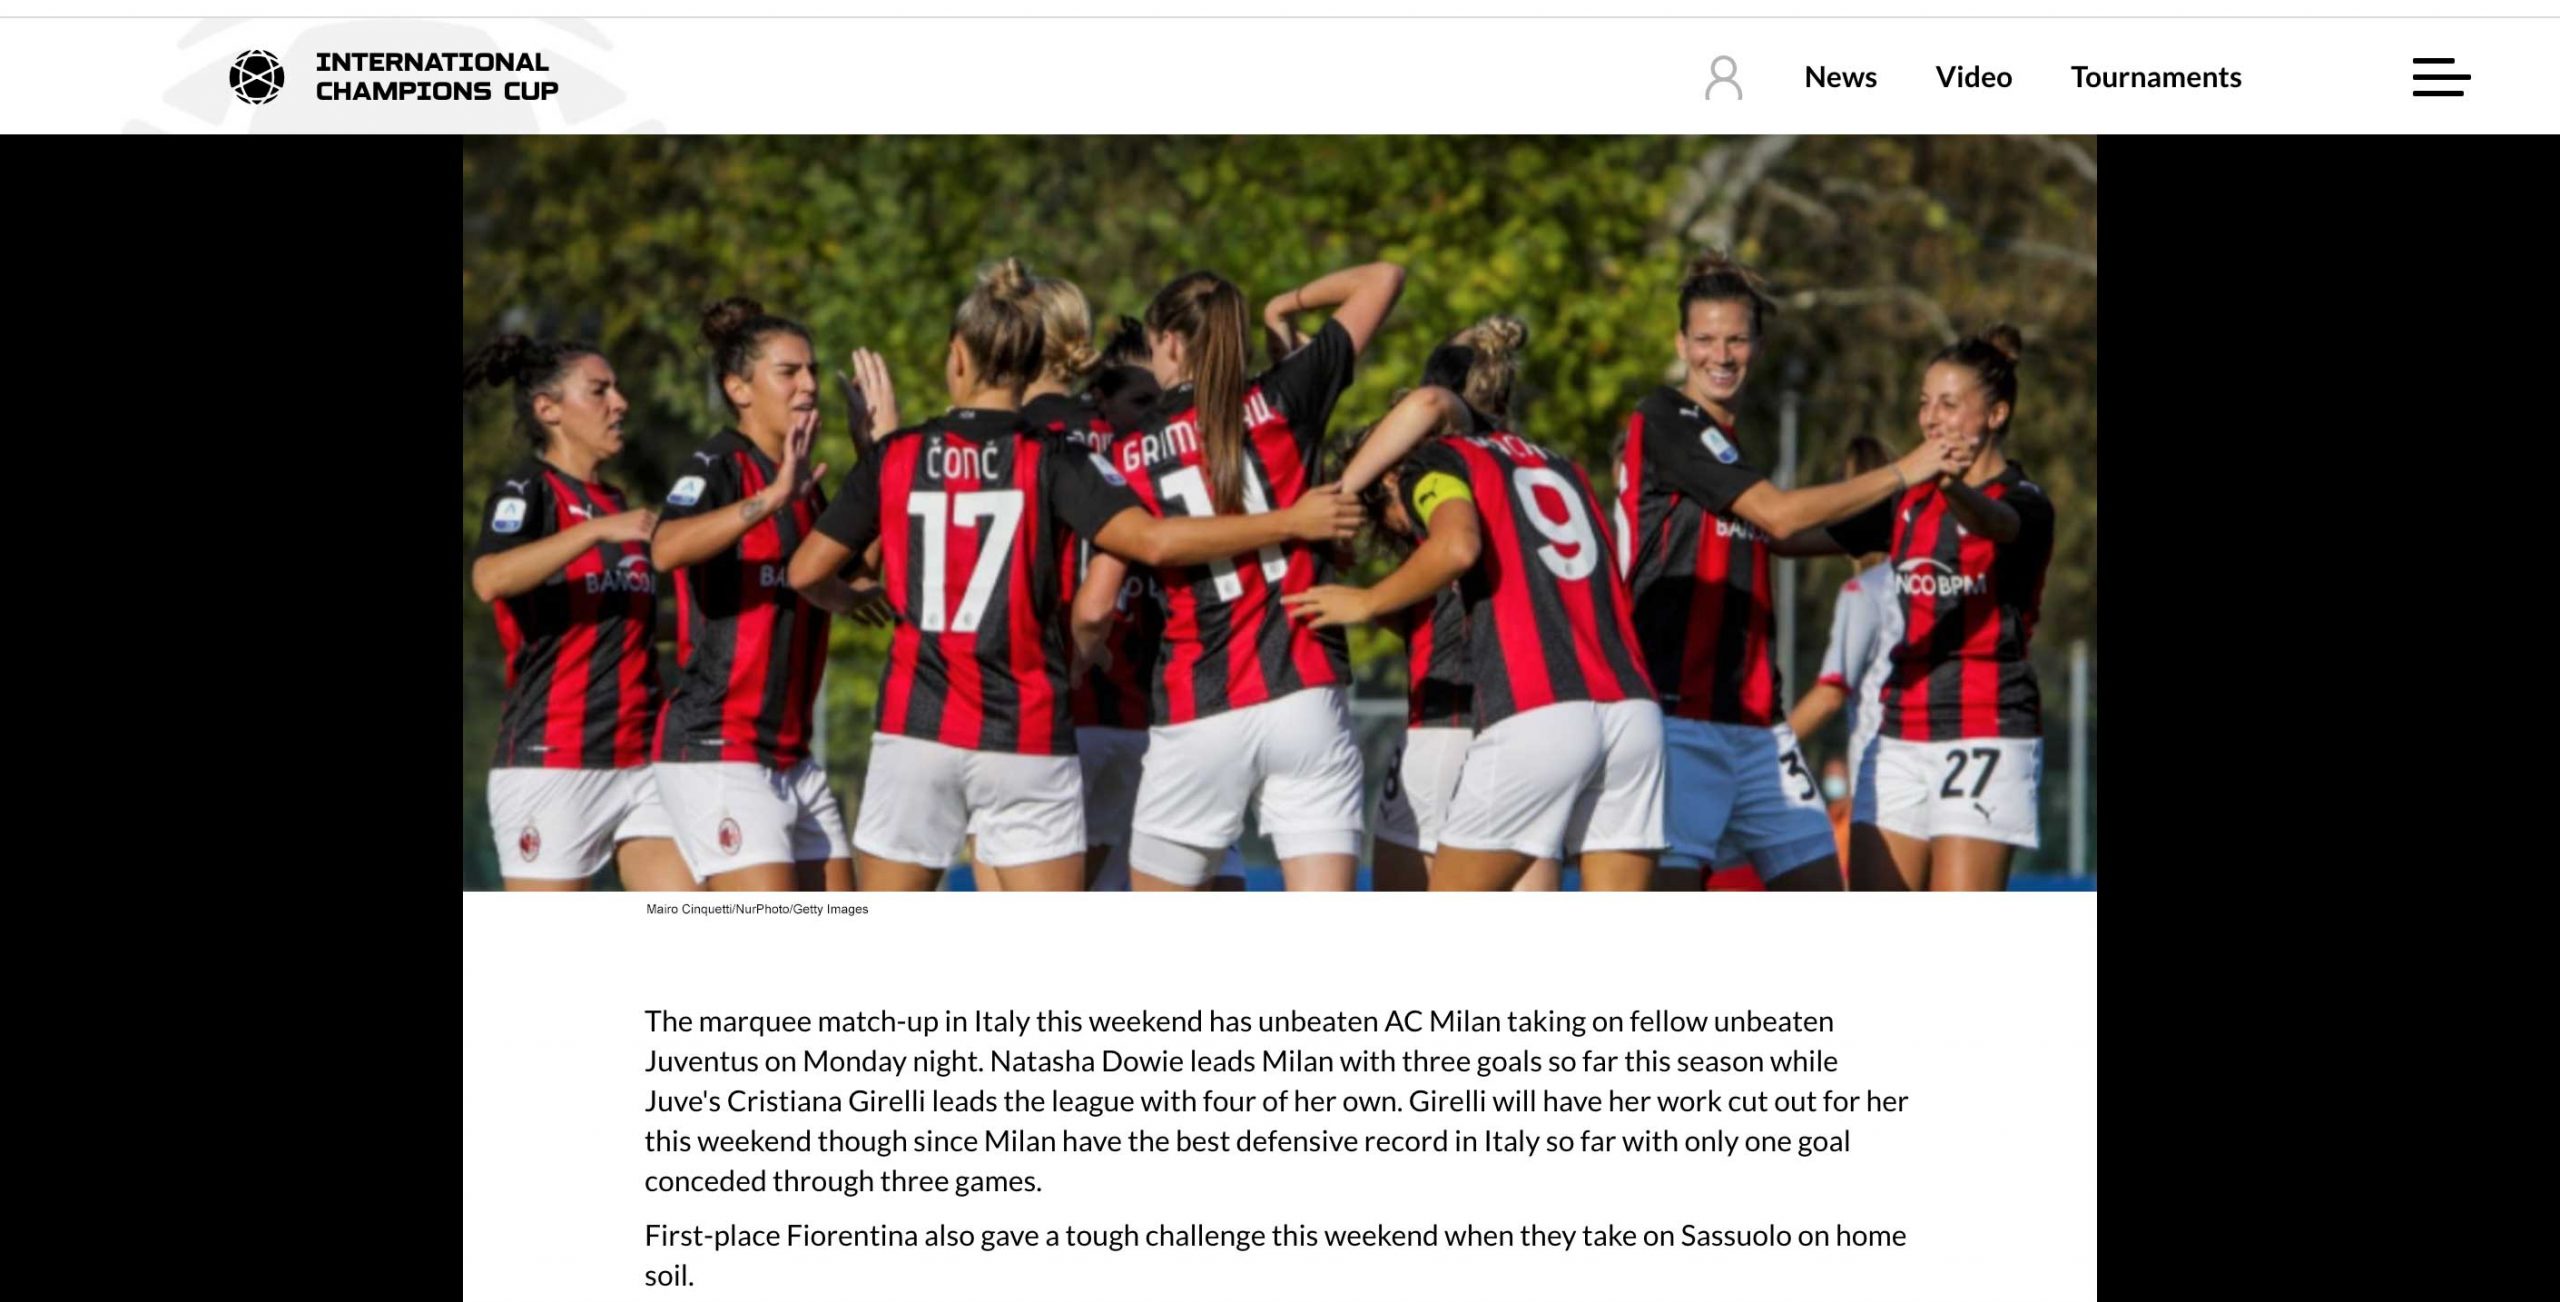 La squadra femminile del Milan in una pubblicazione su International Champions Cup, foto di Mairo Cinquetti